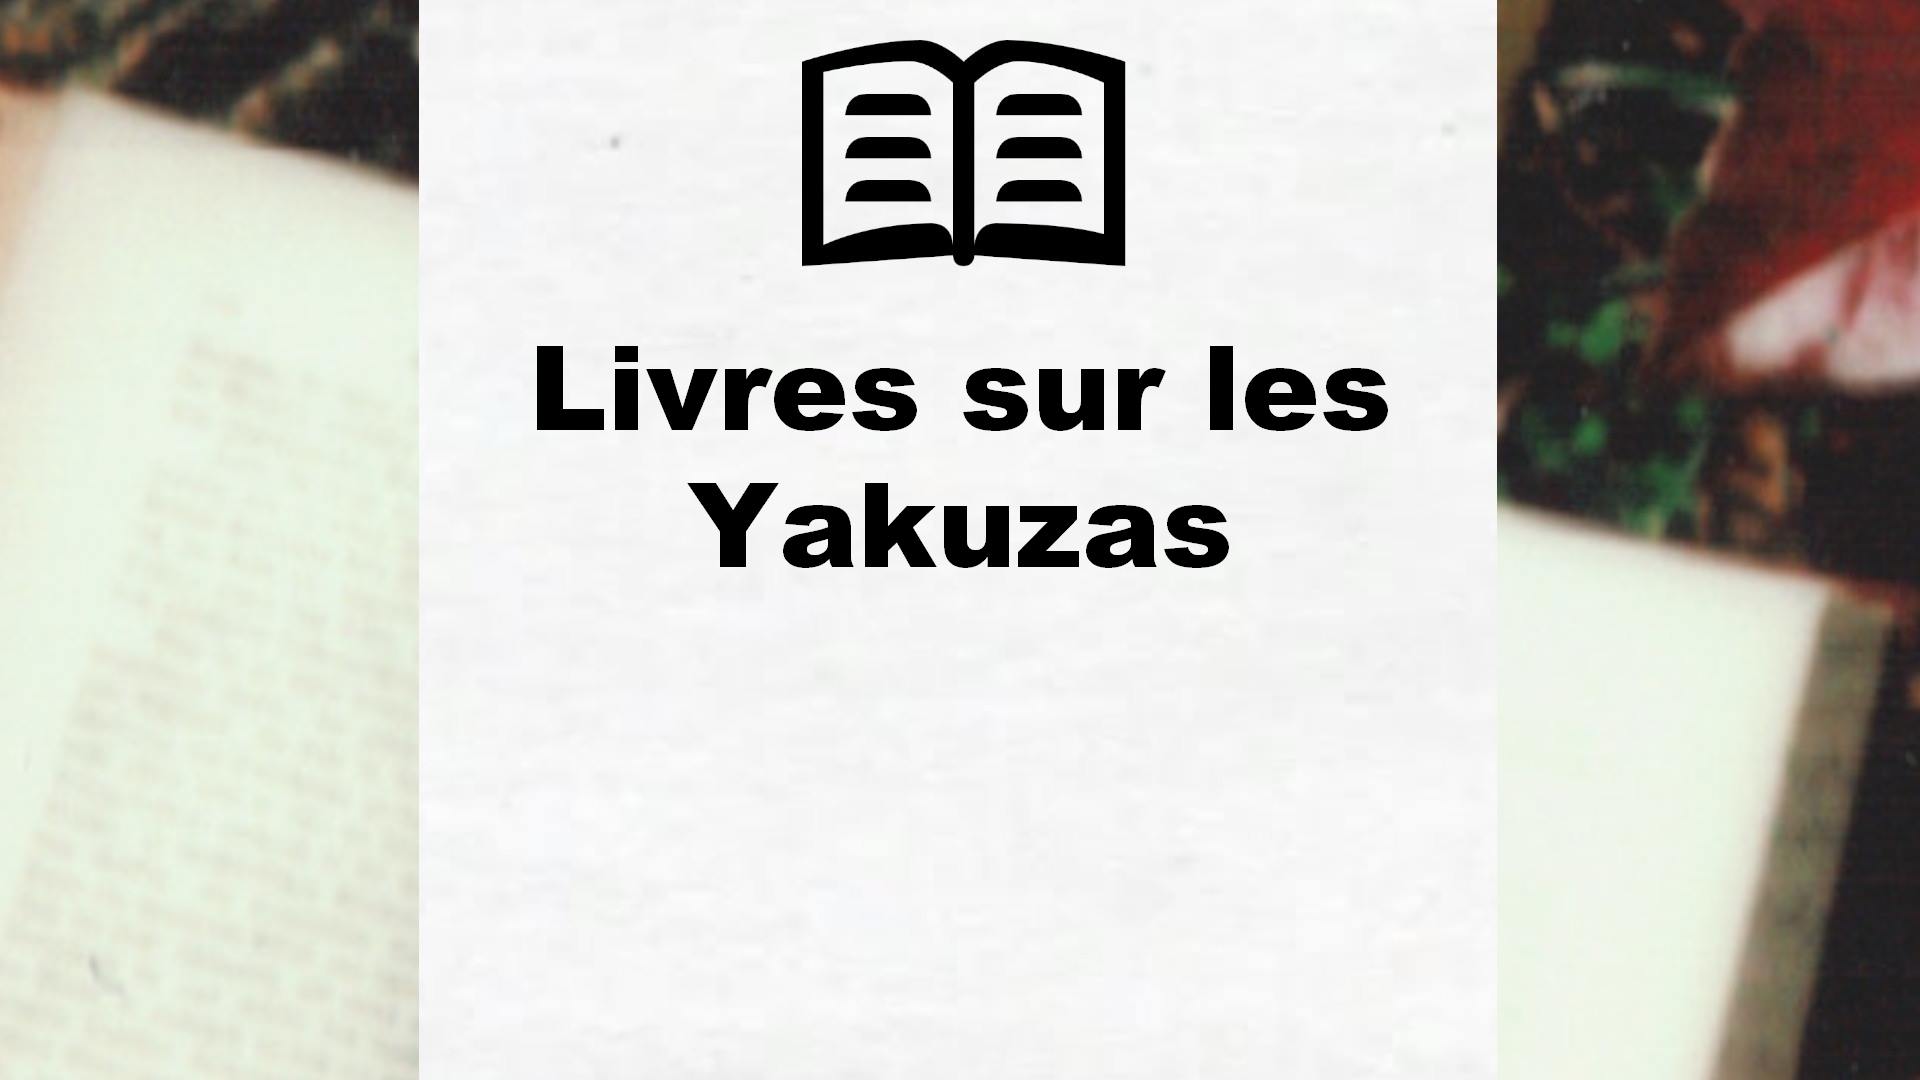 Livres sur les Yakuzas